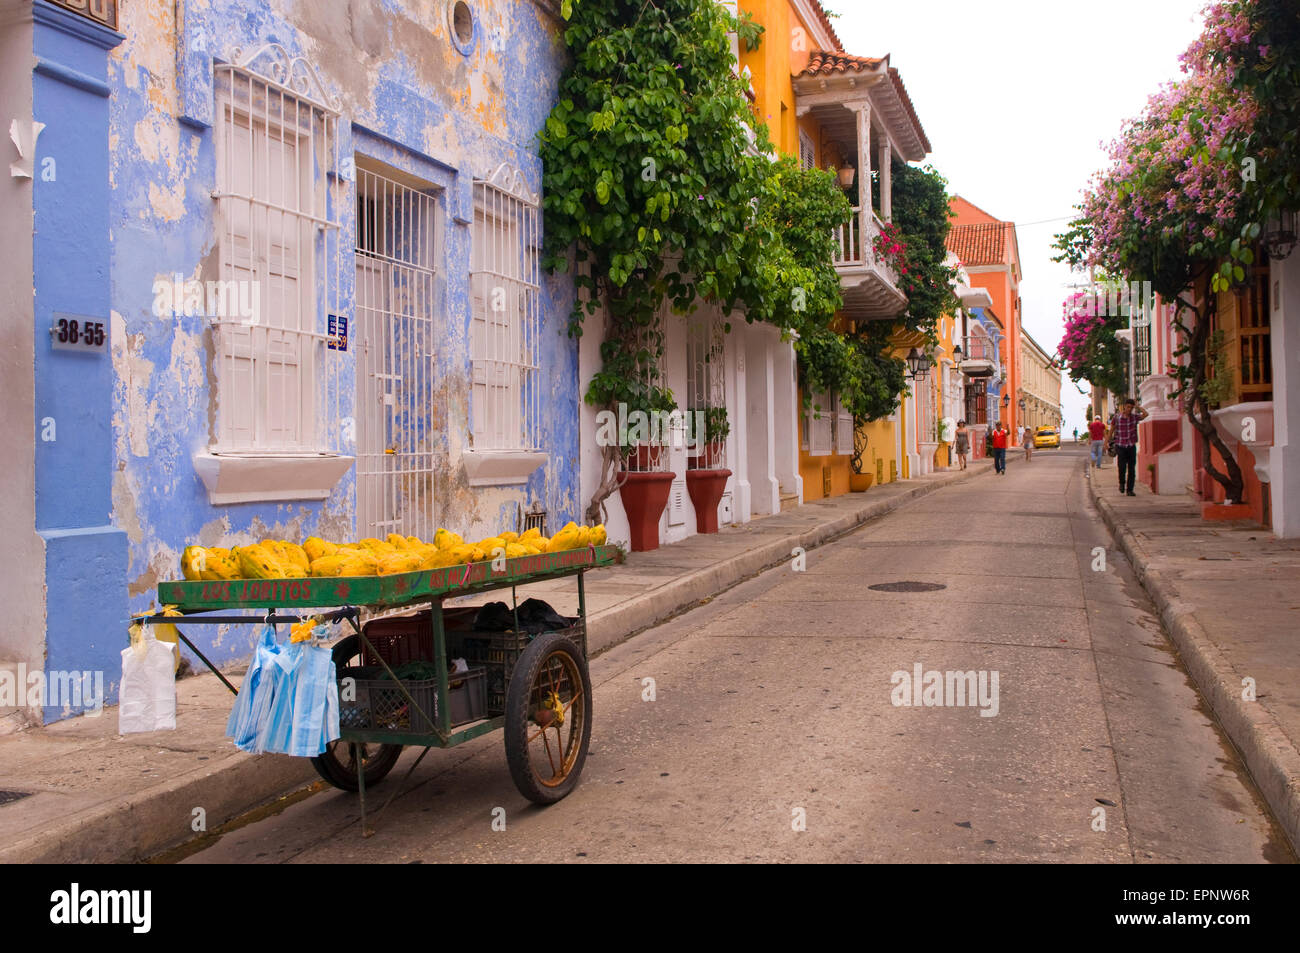 Un typique (coloré) rue colorée à Cartagena, Colombie, Amérique du Sud Banque D'Images